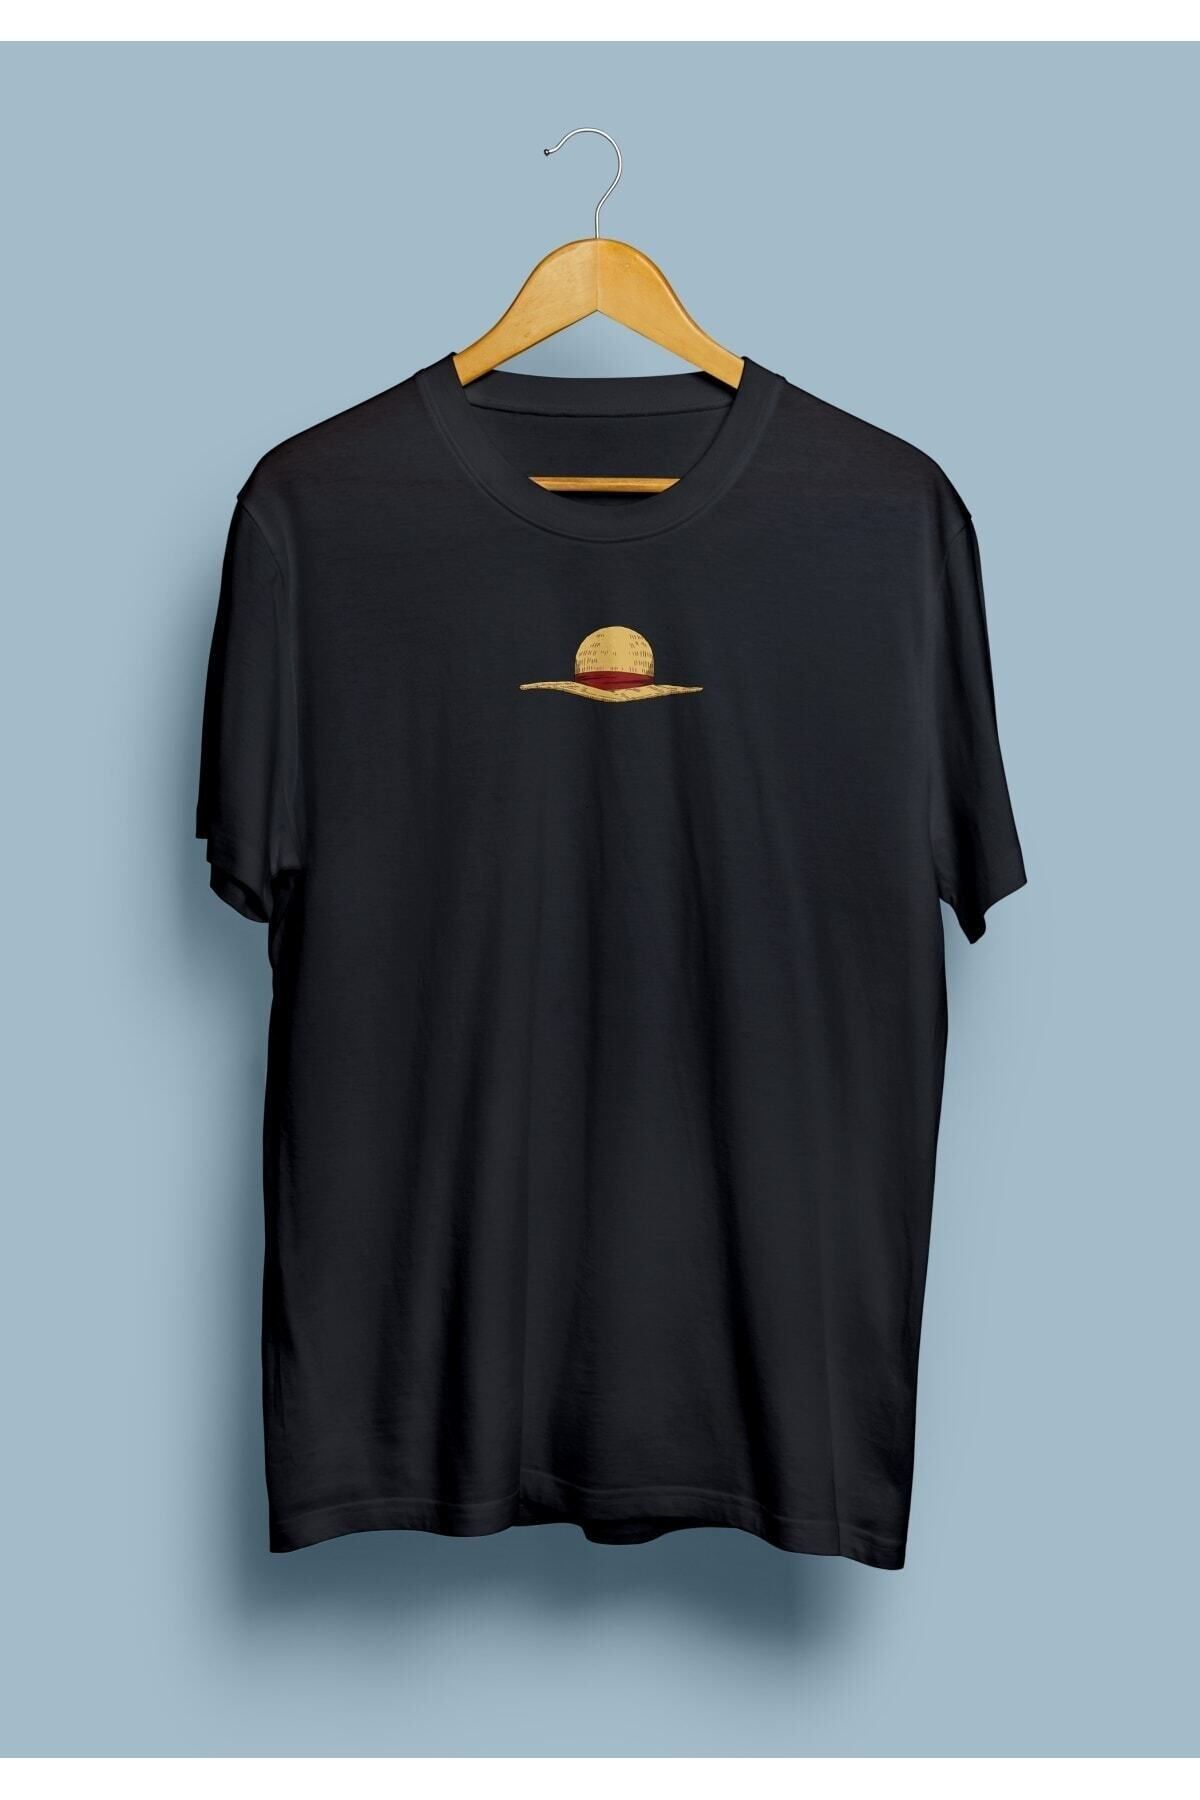 ZOKAWEAR Unisex Siyah One Piece Monkey D Luffy Şapka Karakter Tasarım Baskılı T-shirt